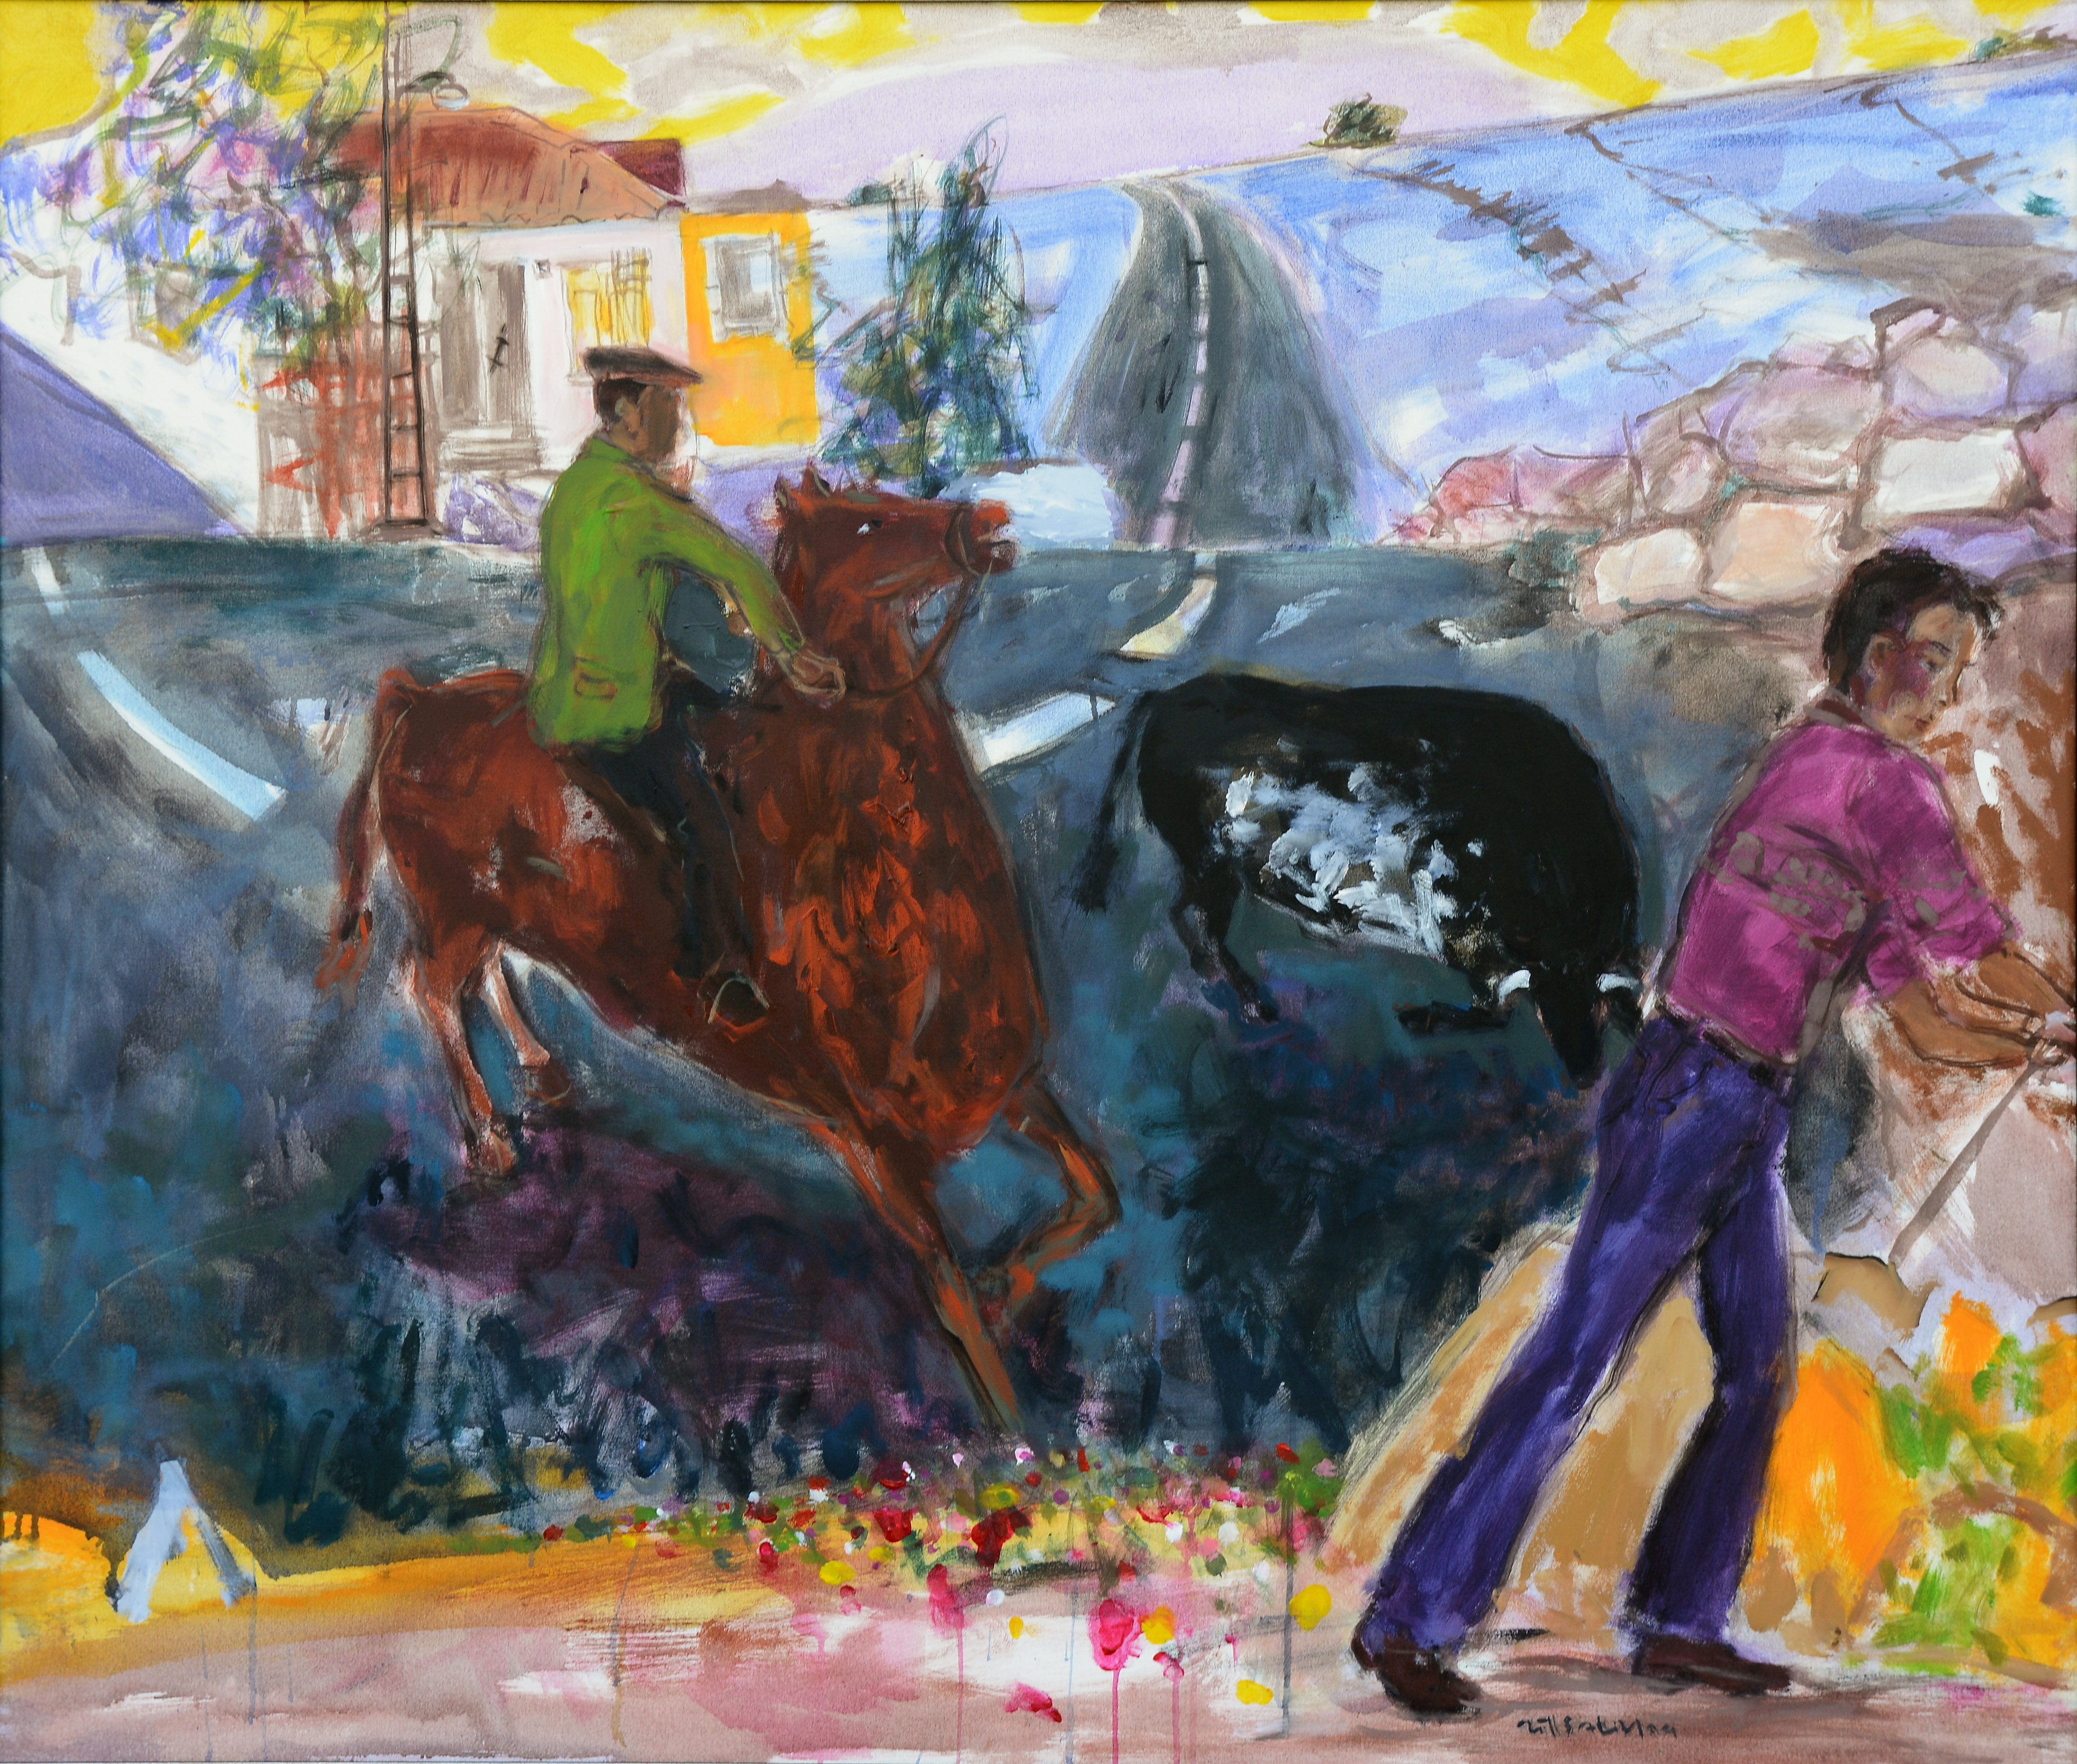 2004, Tuval üzerine yağlıboya-Oil on canvas, 120x140 cm